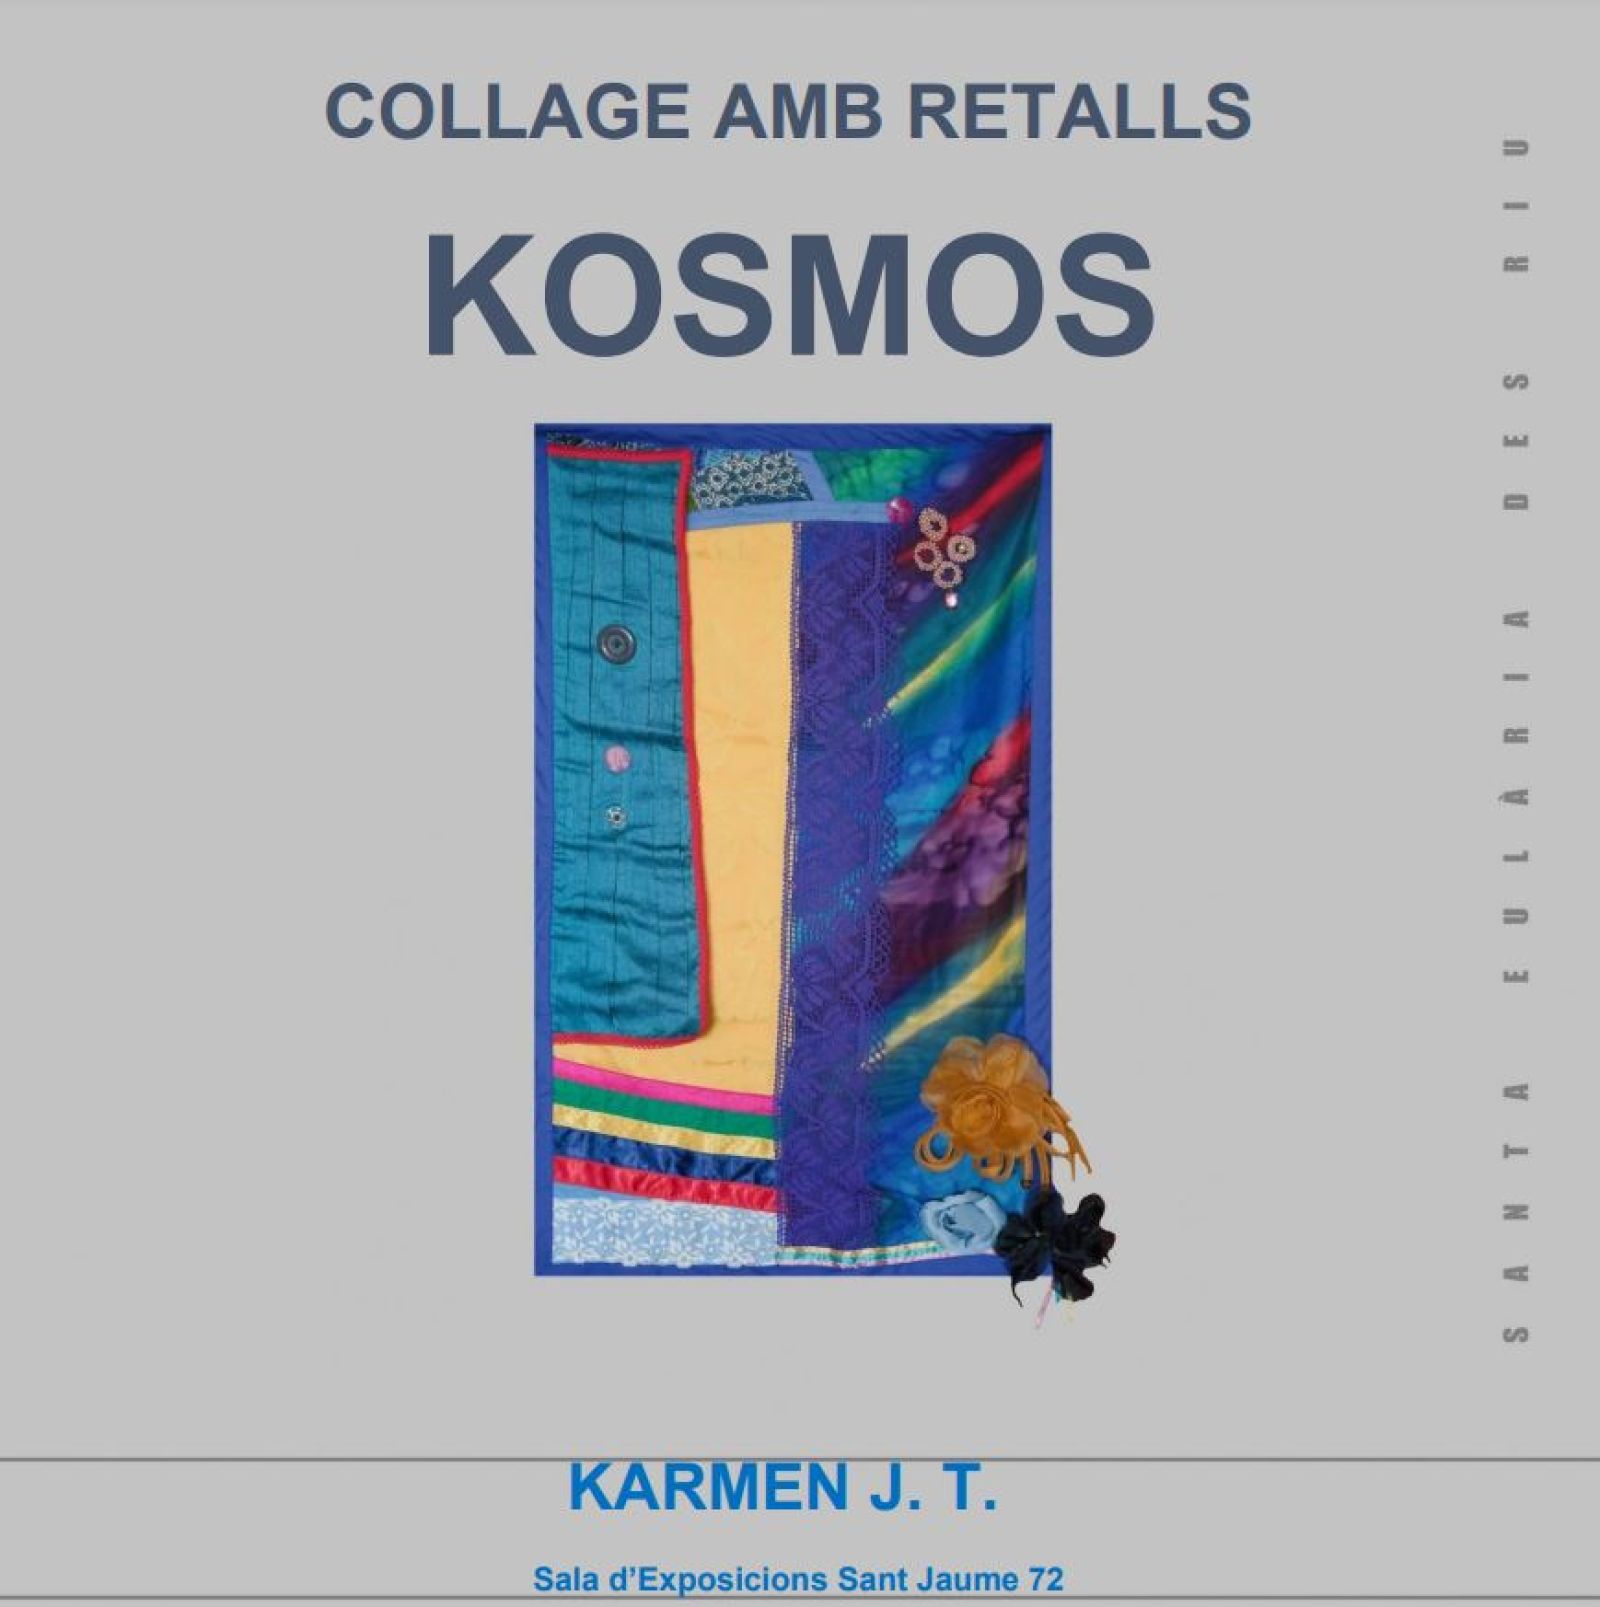 La exposición 'Kosmos' llega a la Sala d'Exposicions Sant Jaume 72